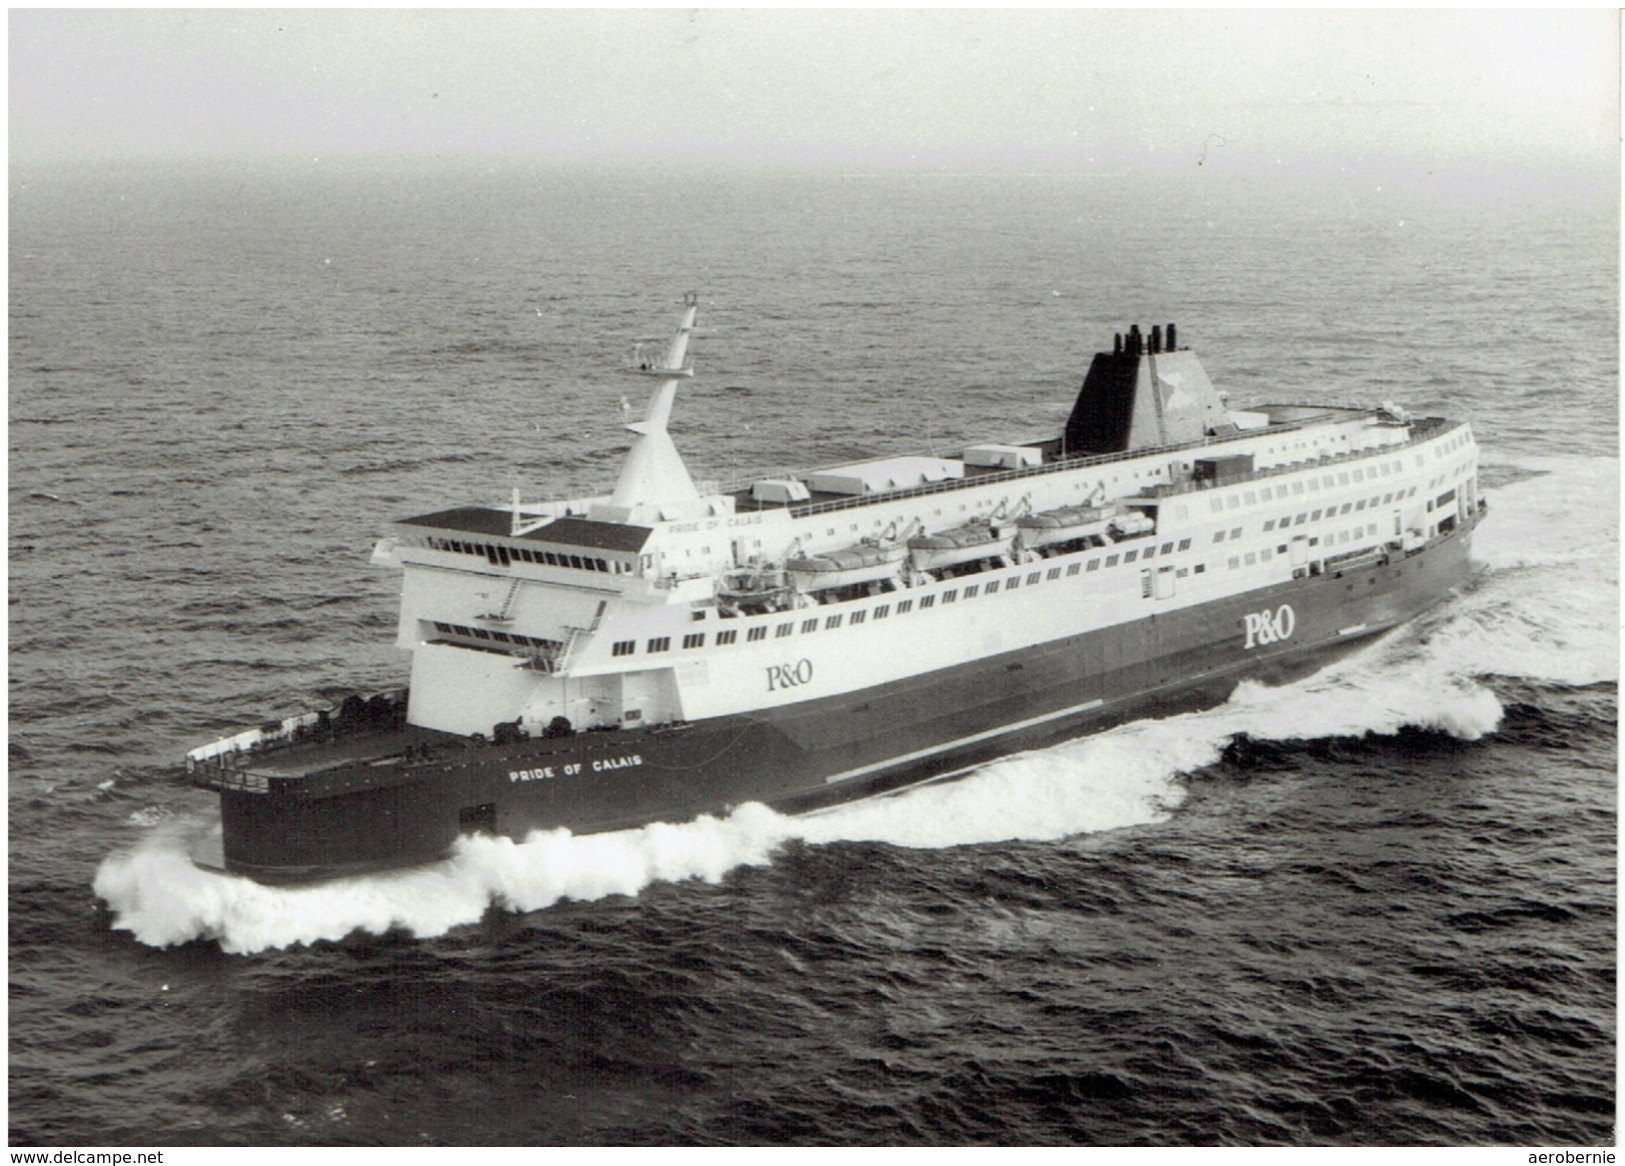 PRIDE OF CALAIS (P&O European Ferries)  - XXL-Pressefoto S/w - Schiffe